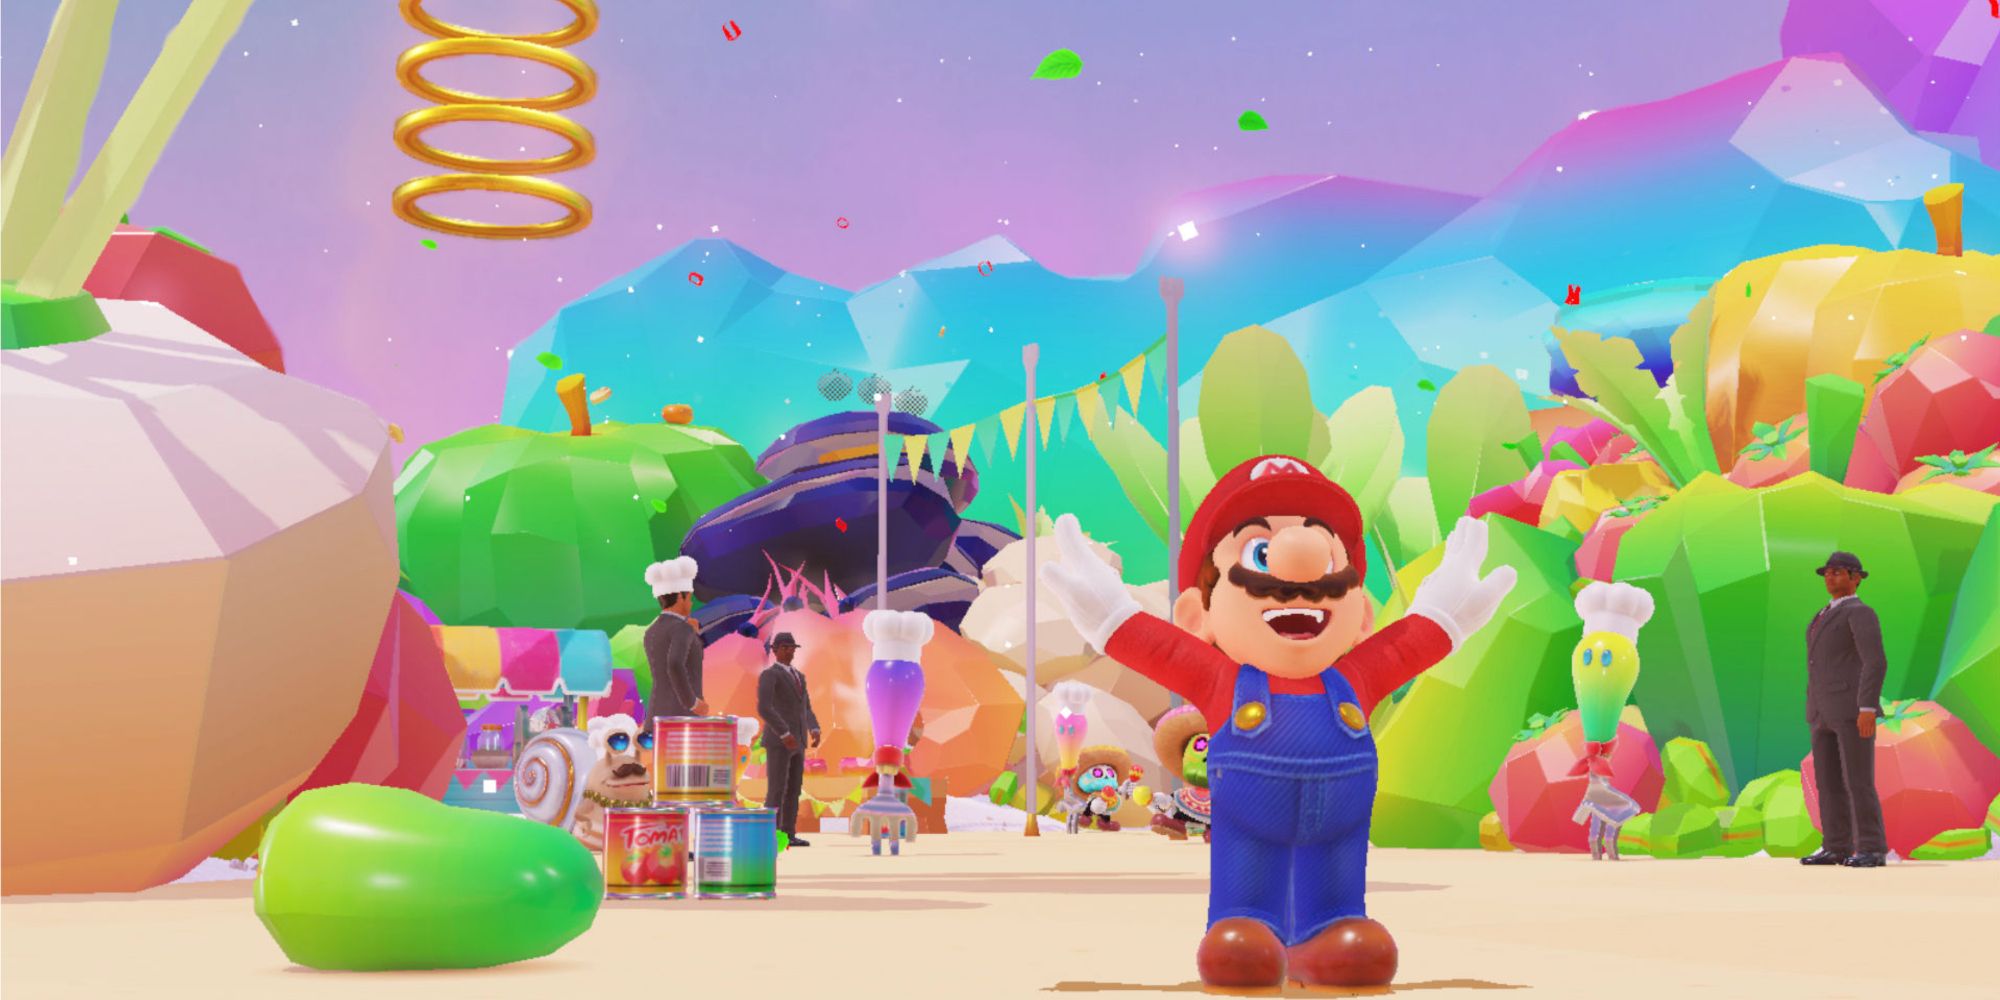 Mario posing in Super Mario Odyssey